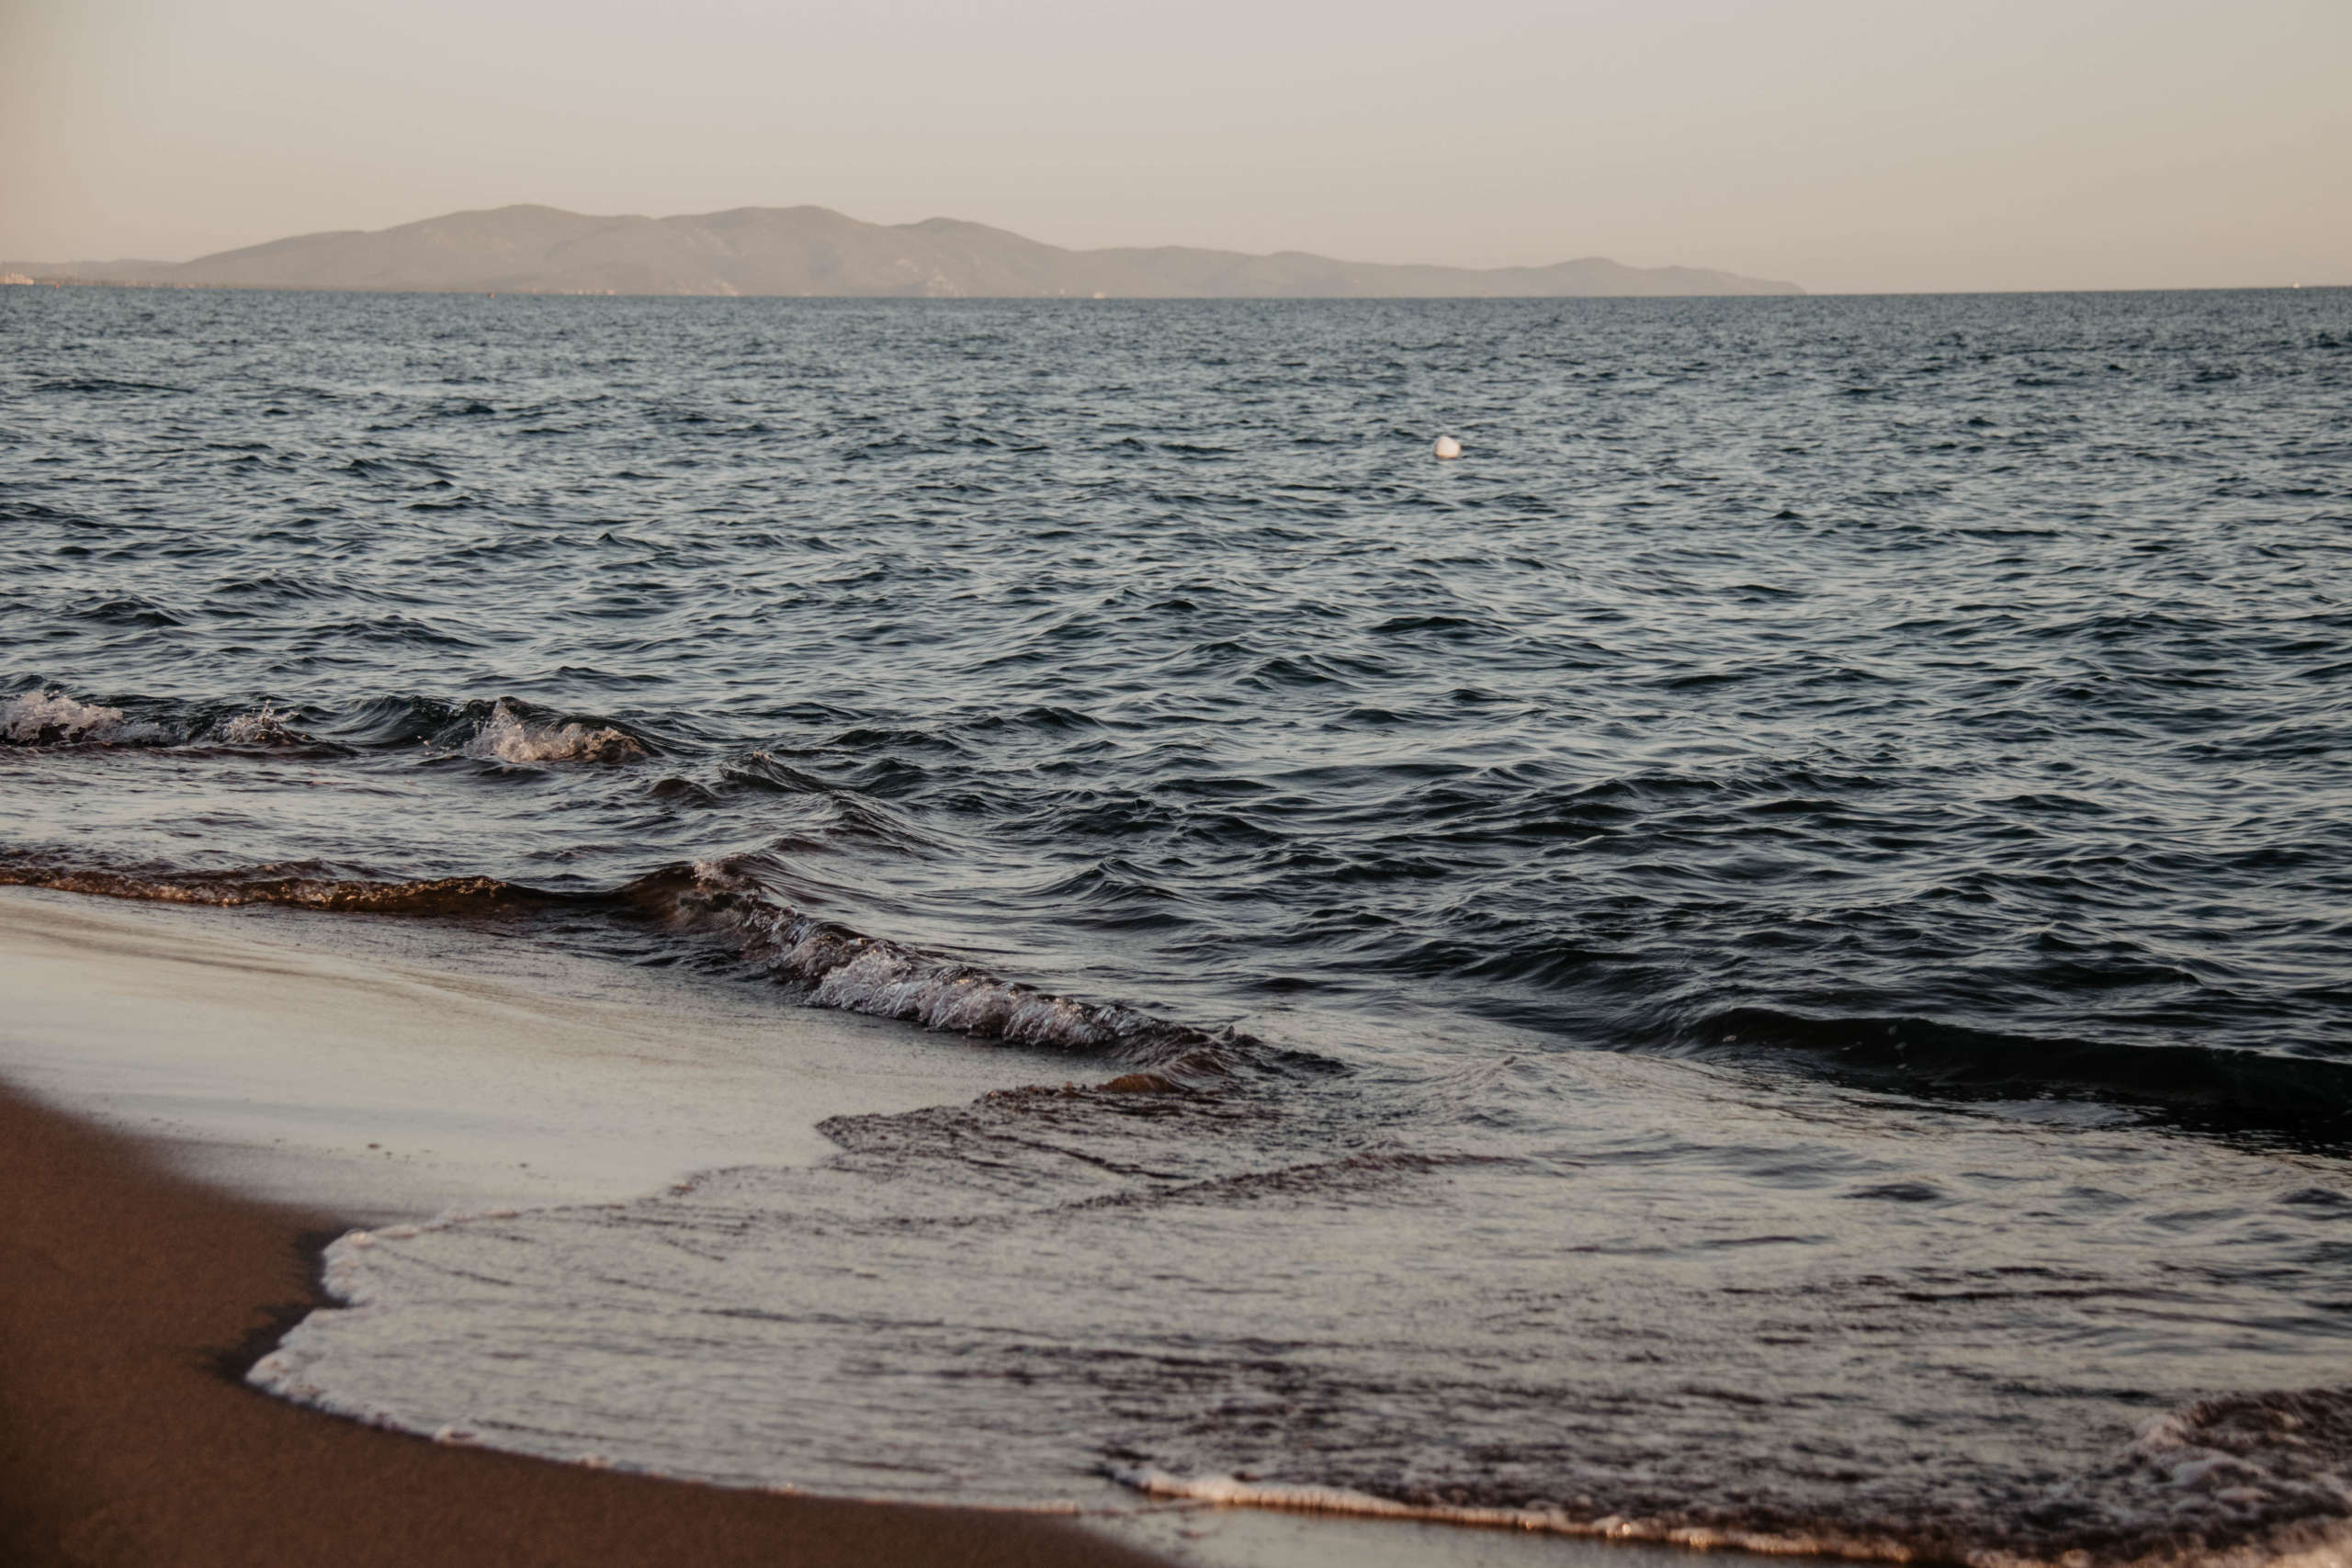 Sanfte Wellen werden an den Strand gespült - die traumhafte Mittelmeerküste der Toskana gilt bei vielen noch als Geheimtipp.